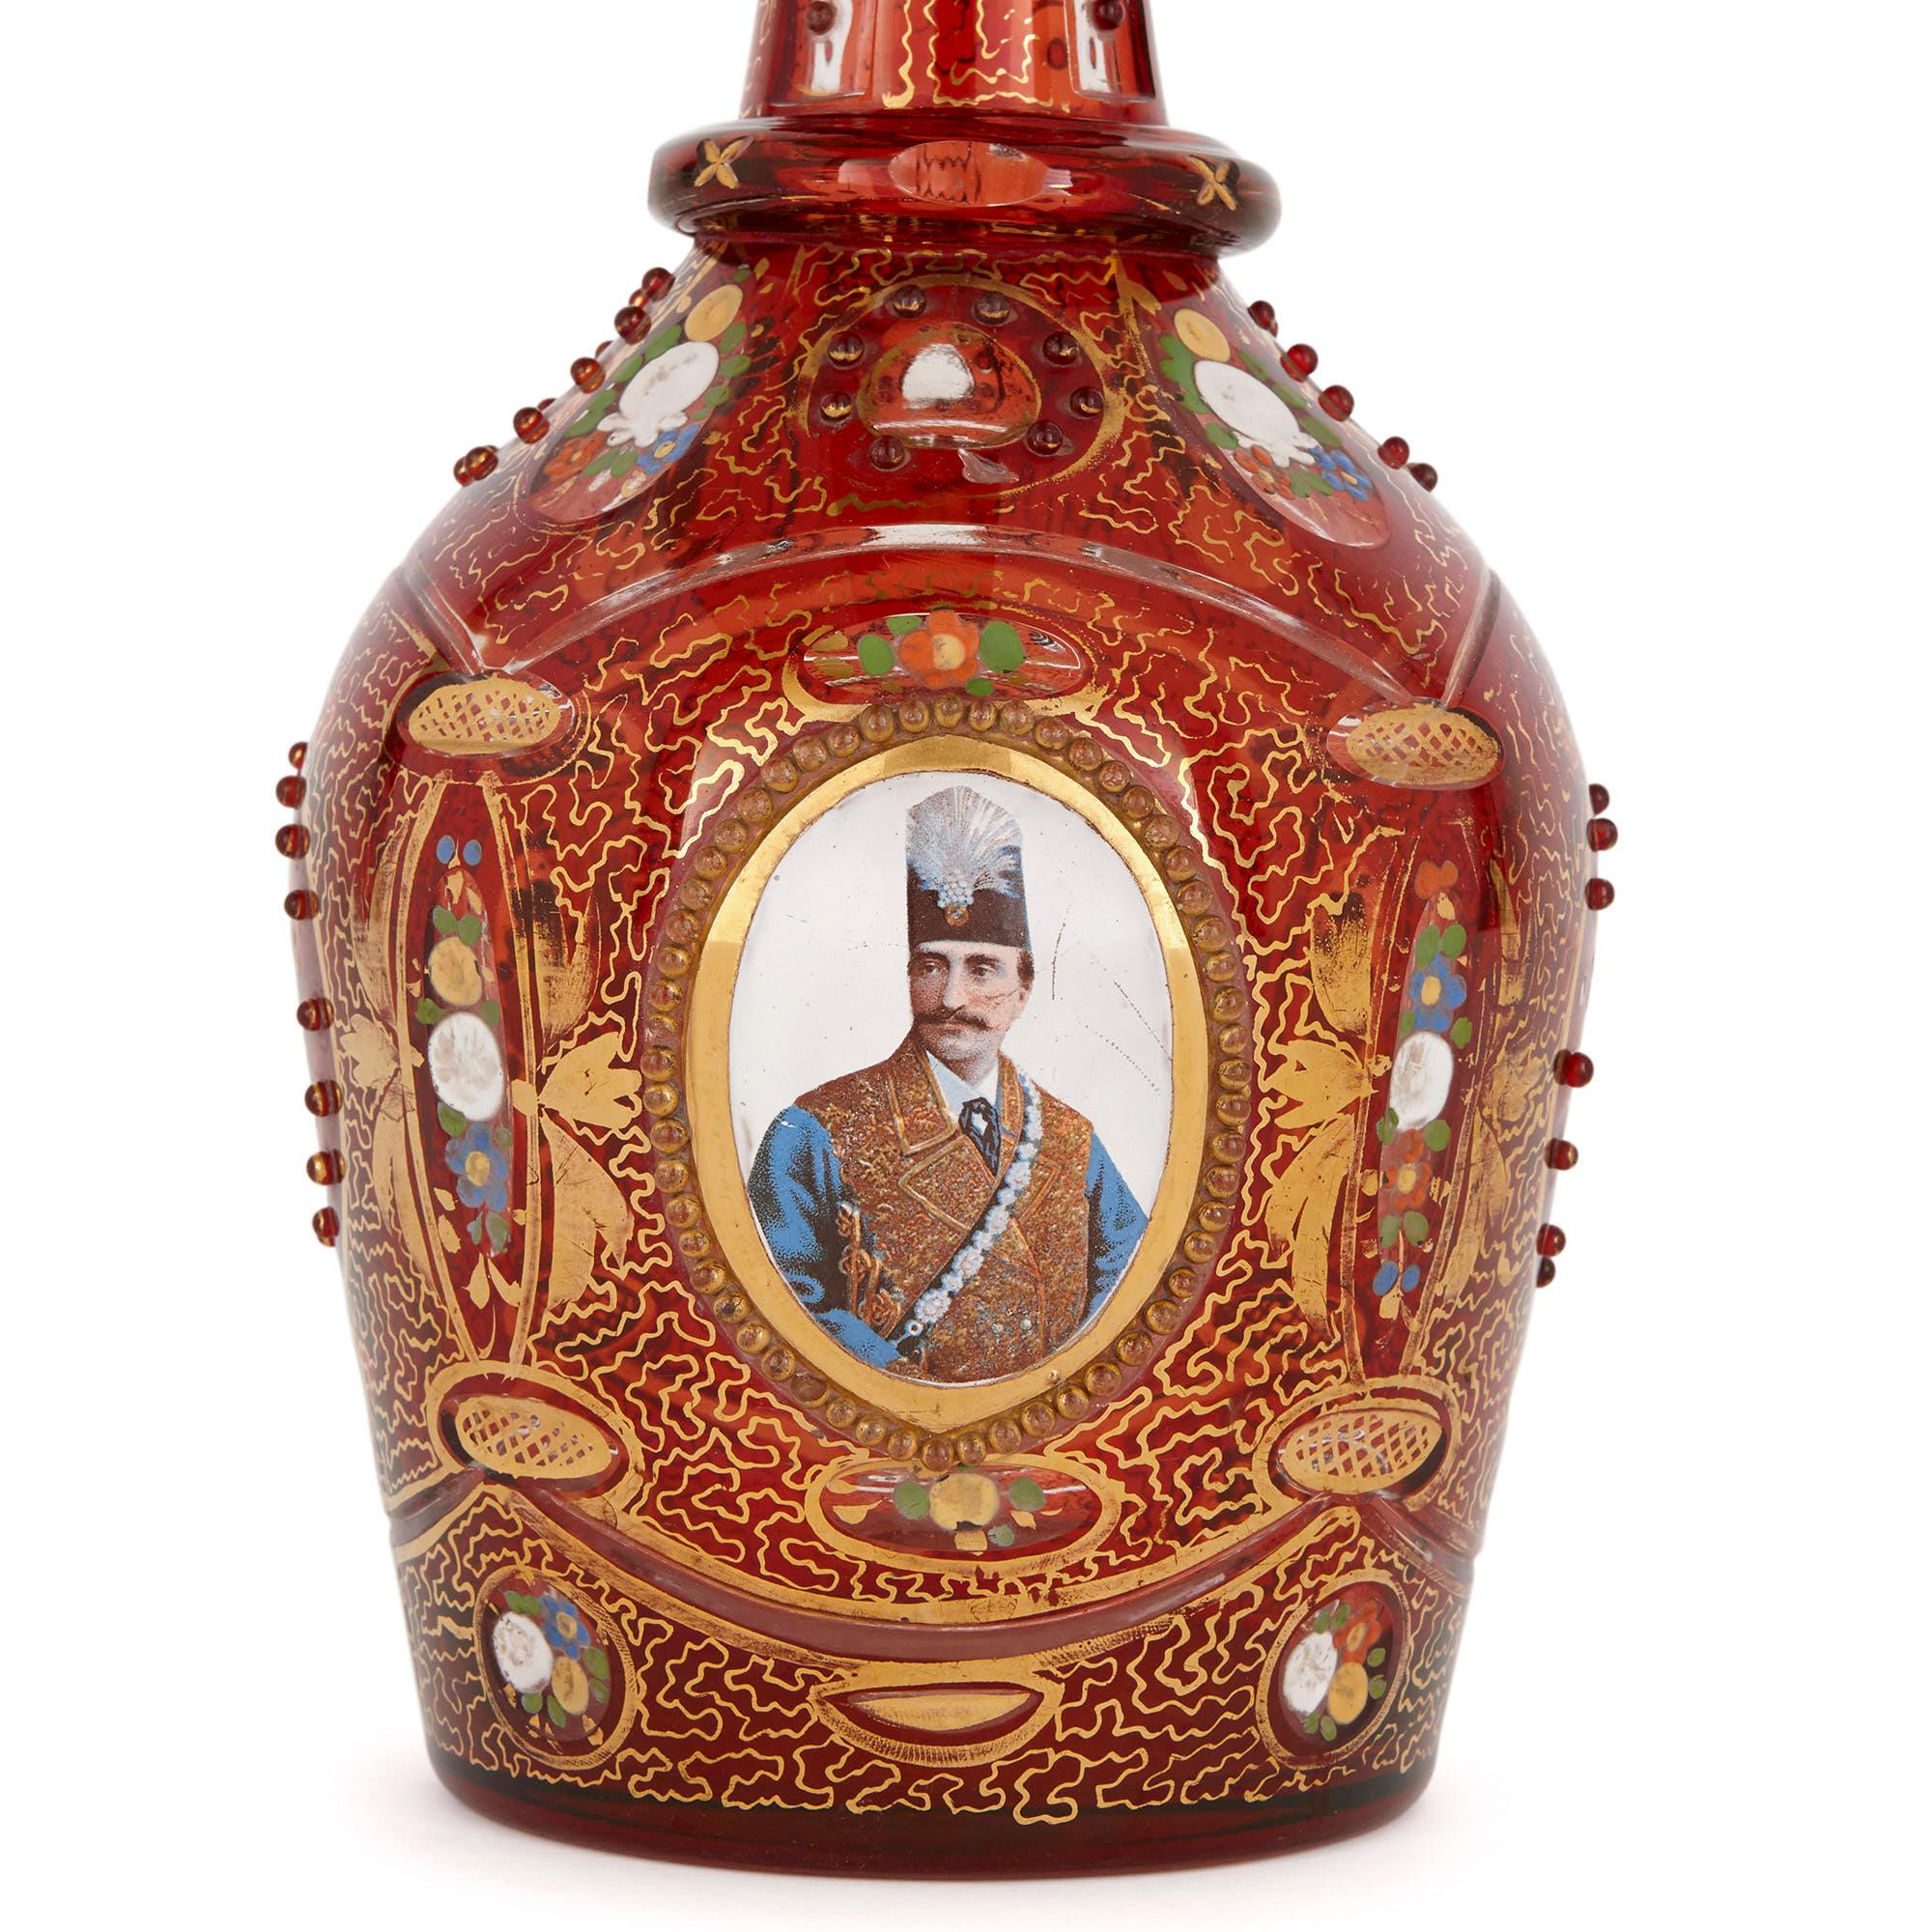 Cette exquise carafe en verre rubis a été fabriquée à la fin du XIXe siècle en Bohemia, une région historique réputée pour sa verrerie. Le verre ancien de Bohême est aujourd'hui considéré comme un objet de collection en raison de la qualité de son